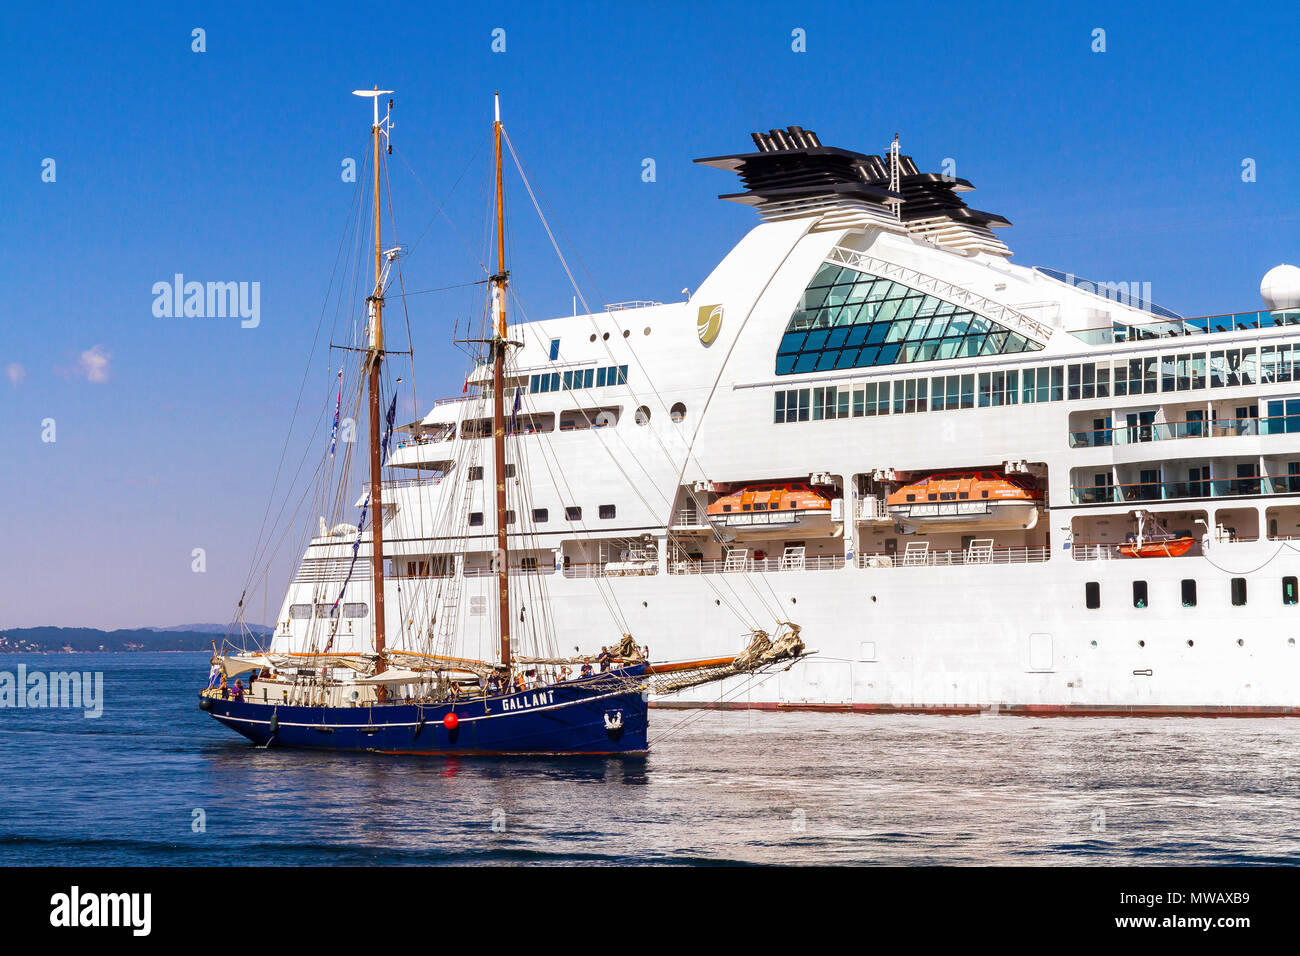 Tall Ships Race Bergen 2014. La goletta olandese "Gallant' entrando in porto di Bergen, nella parte anteriore della nave da crociera Seabourn Quest. Foto Stock